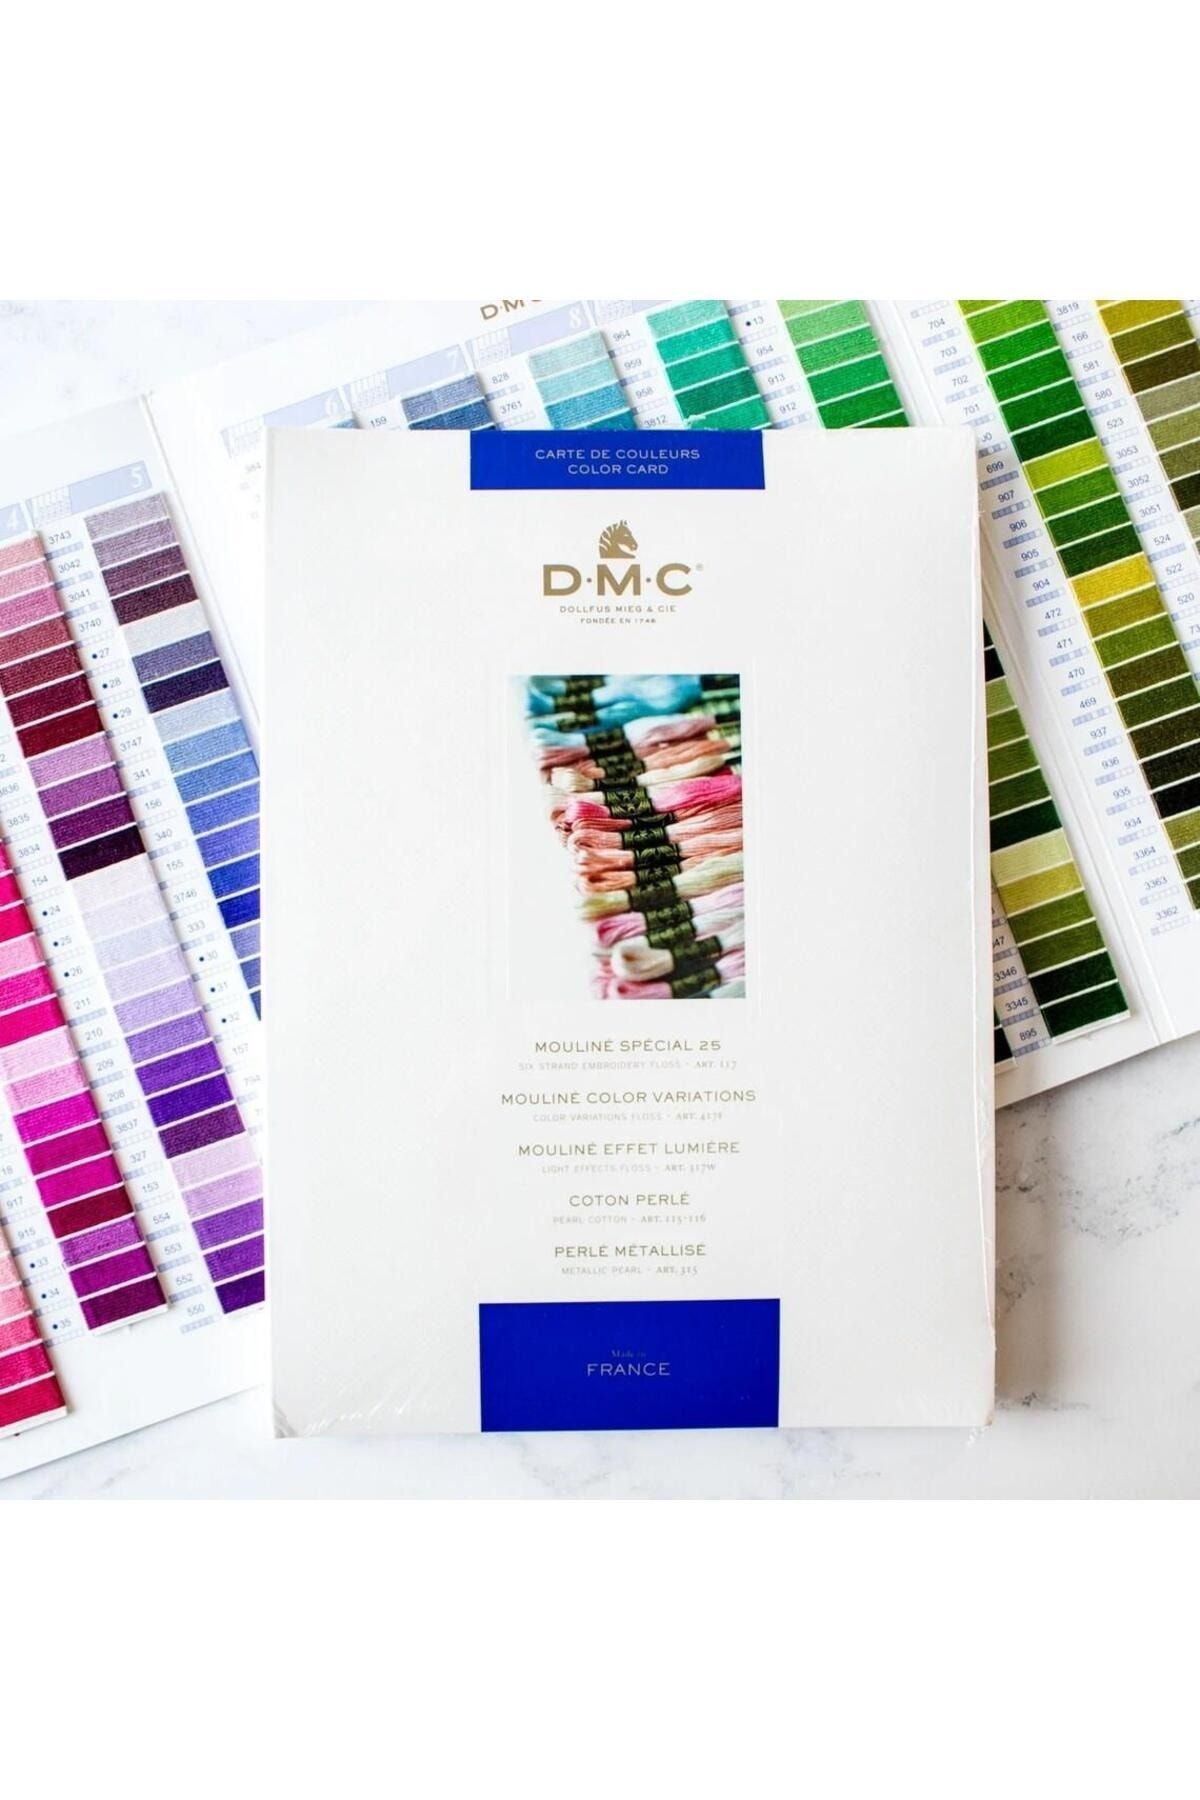 DMC Nakış İplikleri Canlı Renk Kartelası 2020 Basım